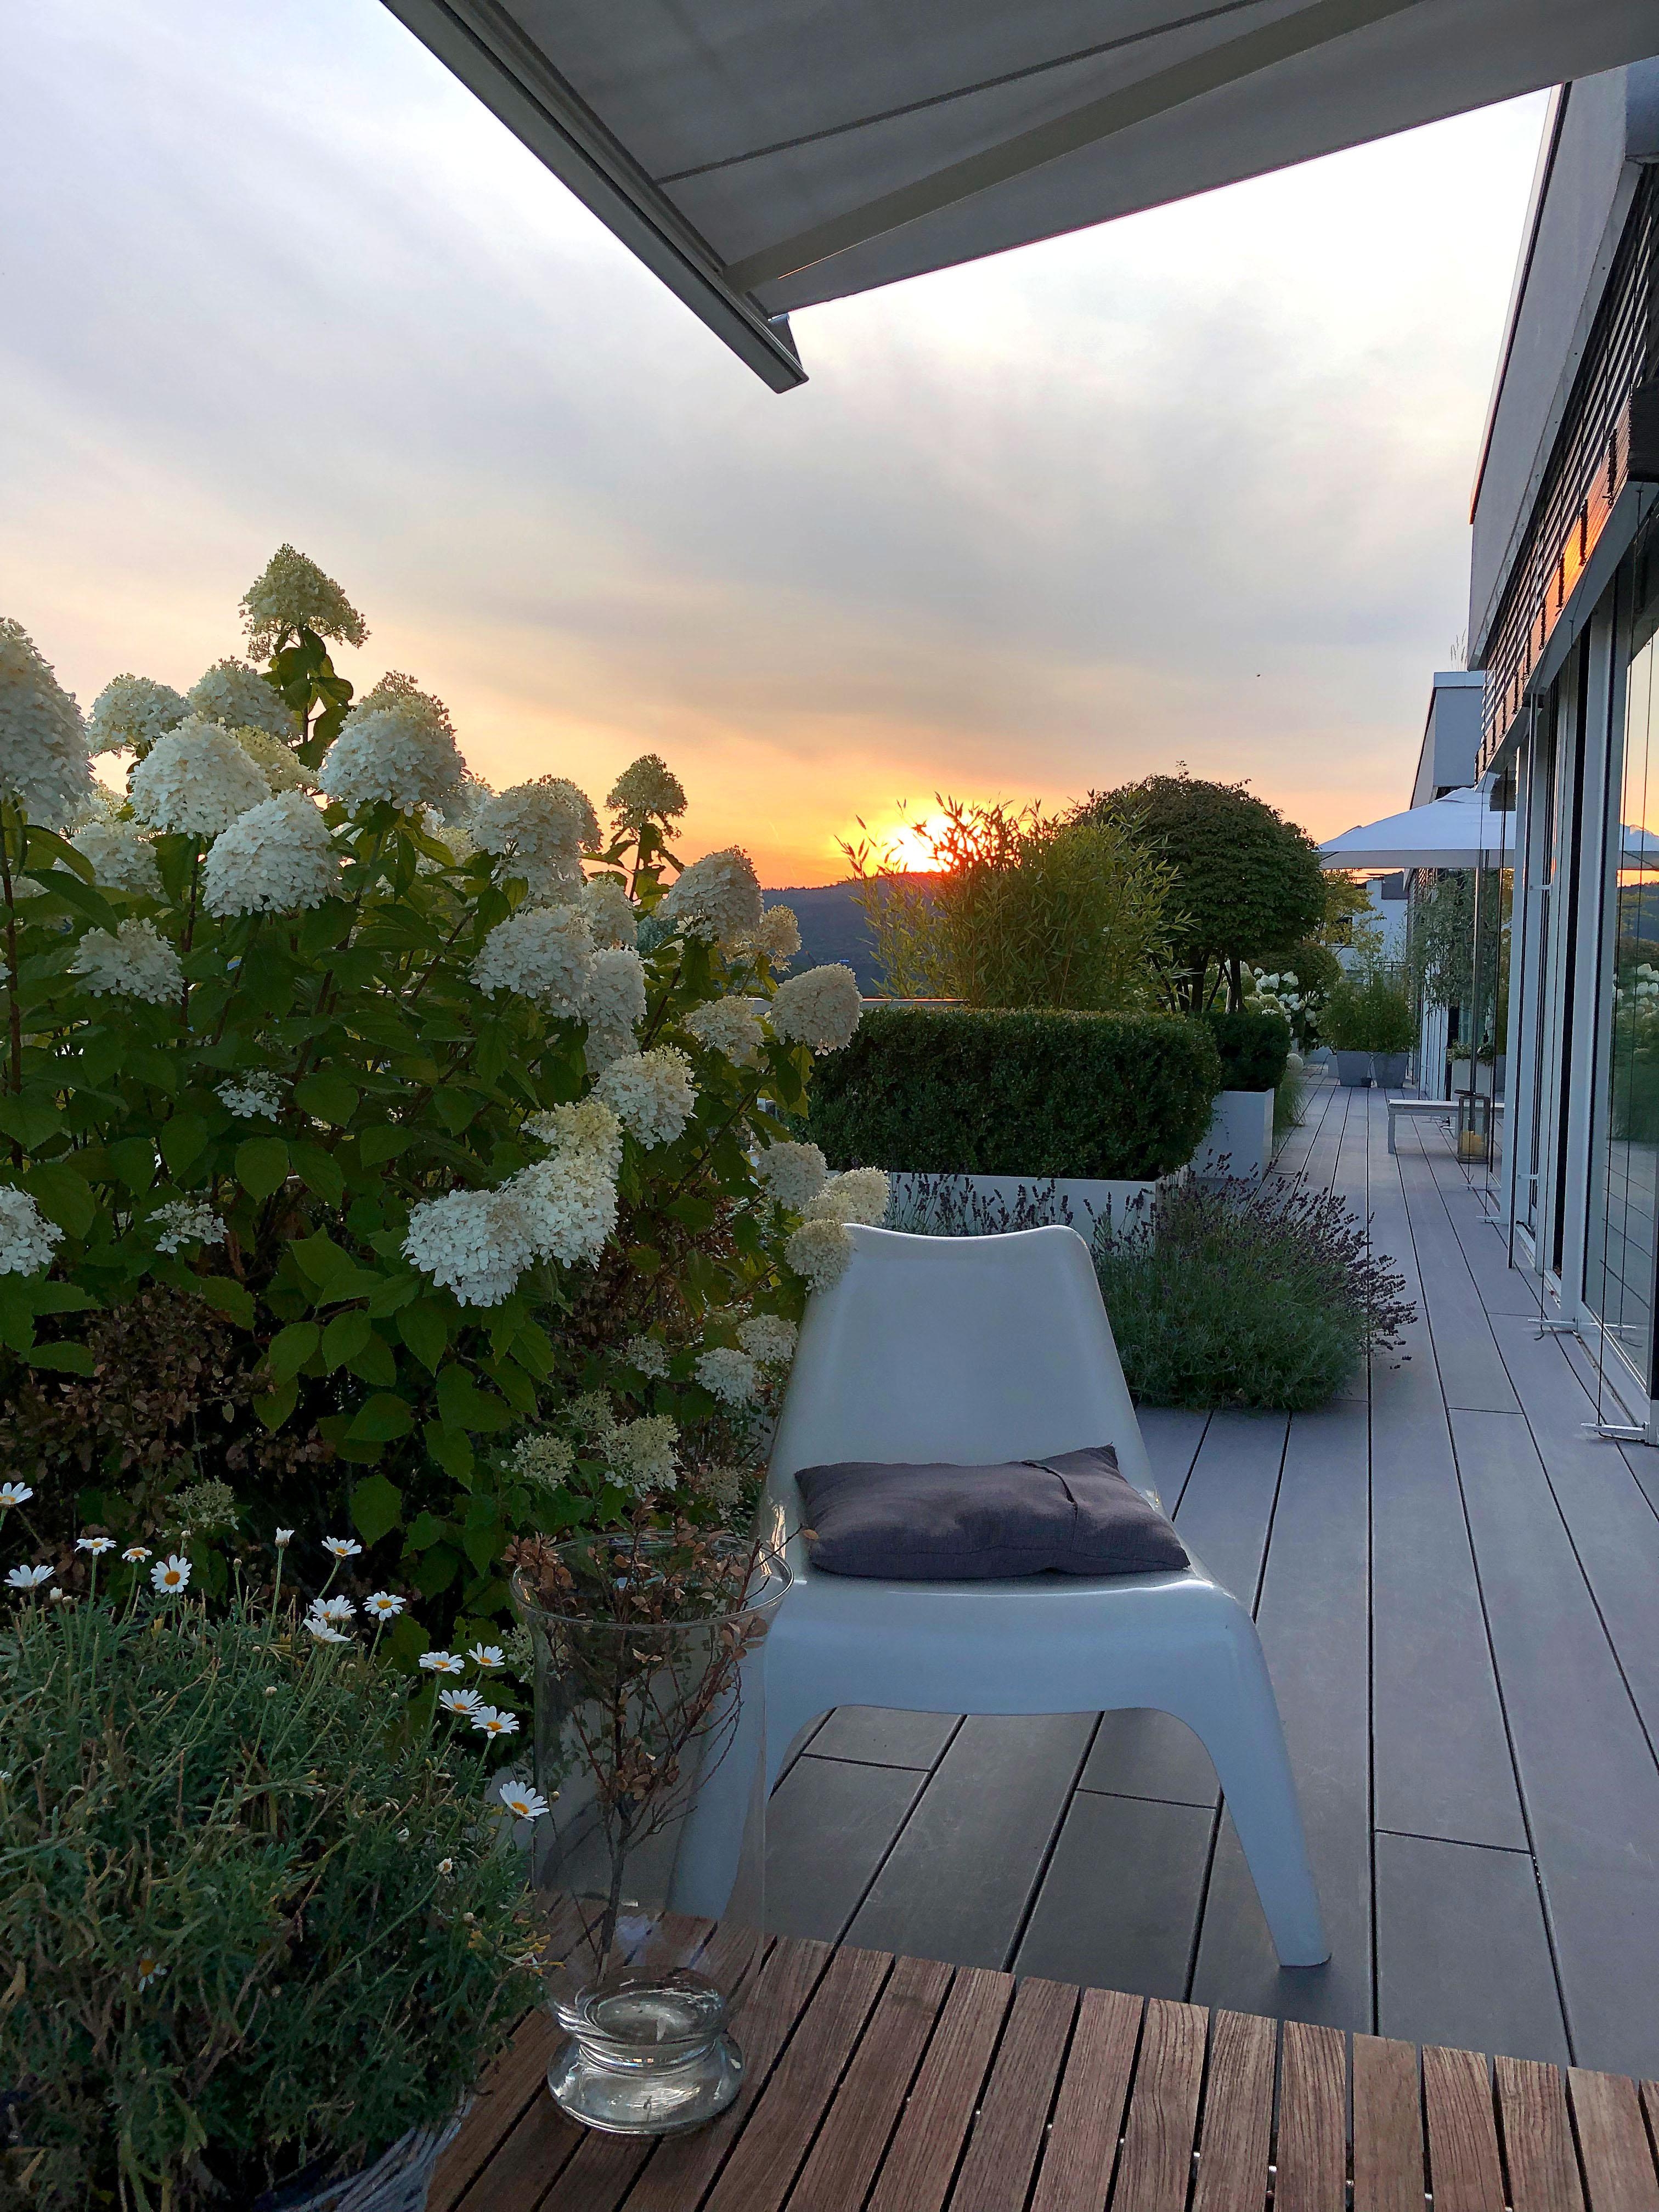 #Lieblingsplatz #Sonnenuntergang #Terrasse #WPC #MYDECK #Terrassenbelag #Penthouse #Terrassengestaltung #Terrassenideen